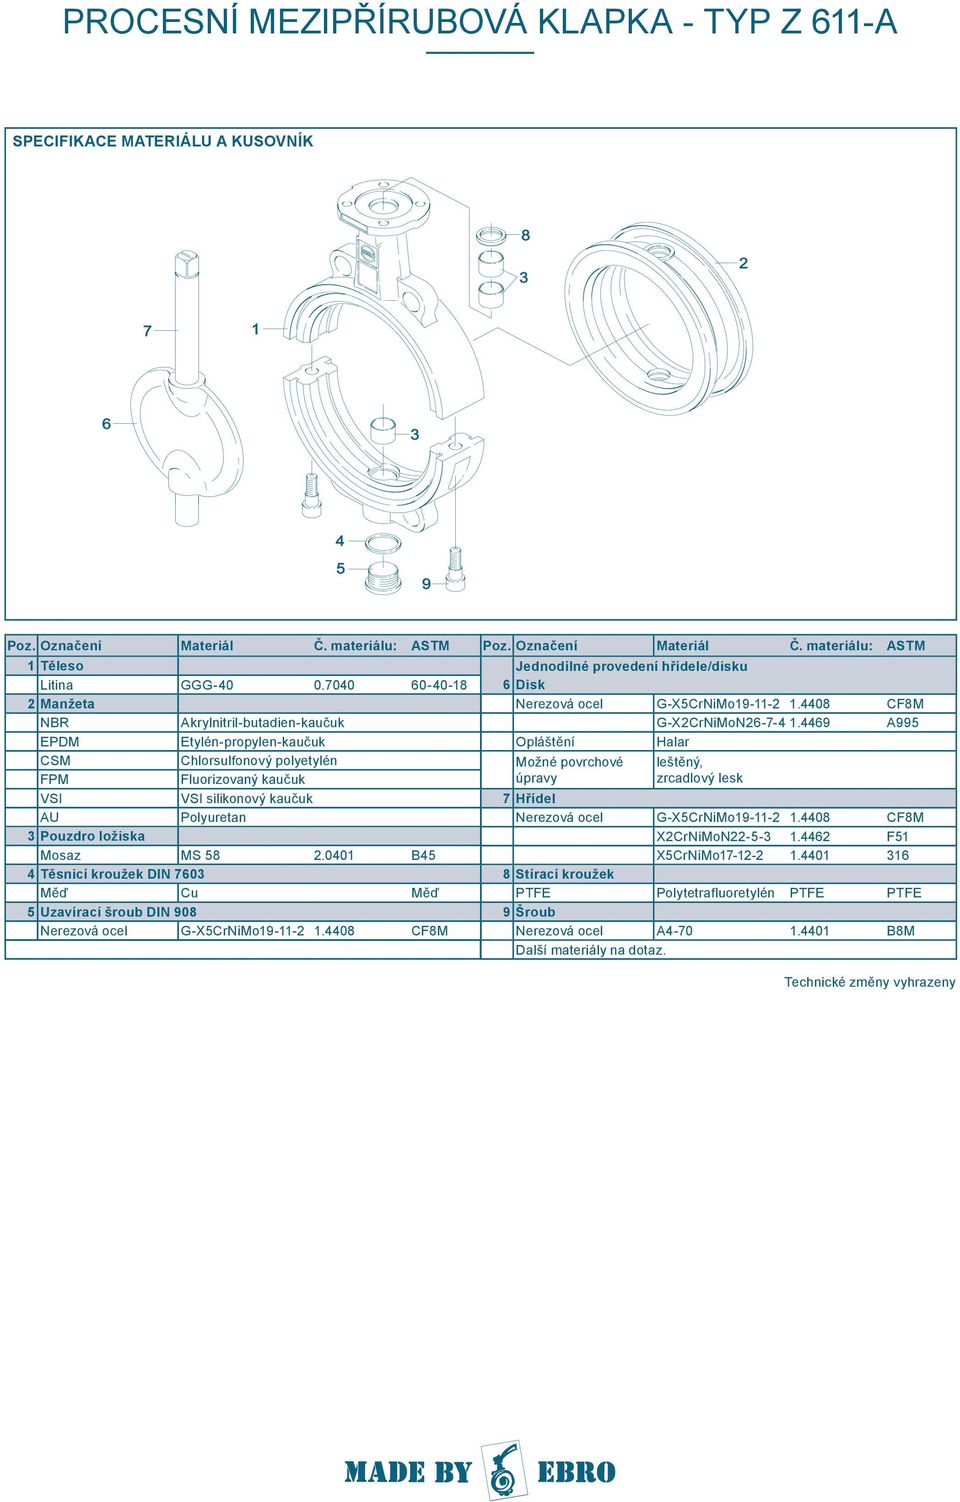 Mosaz MS 58 2.0401 B45 4 Těsnicí kroužek DIN 7603 Měď Cu Měď 5 Uzavírací šroub DIN 908 Nerezová ocel G-X5CrNiMo19-11-2 1.